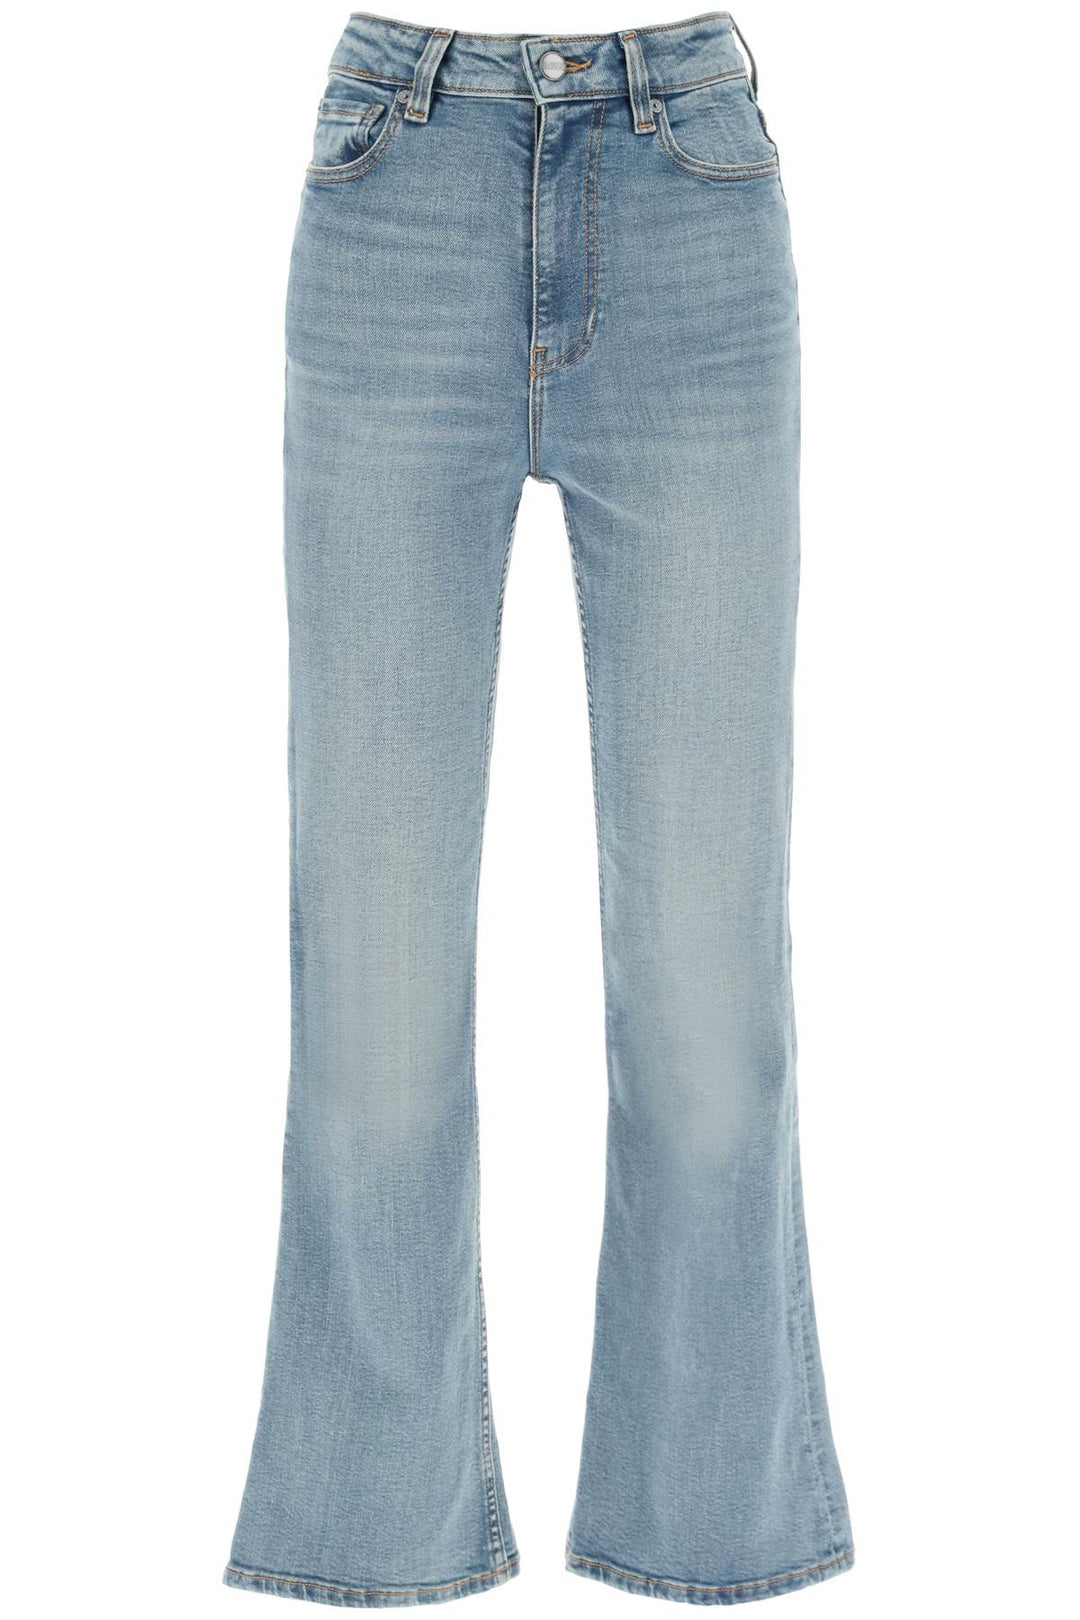 Ganni Bootcut Jeans   Light Blue